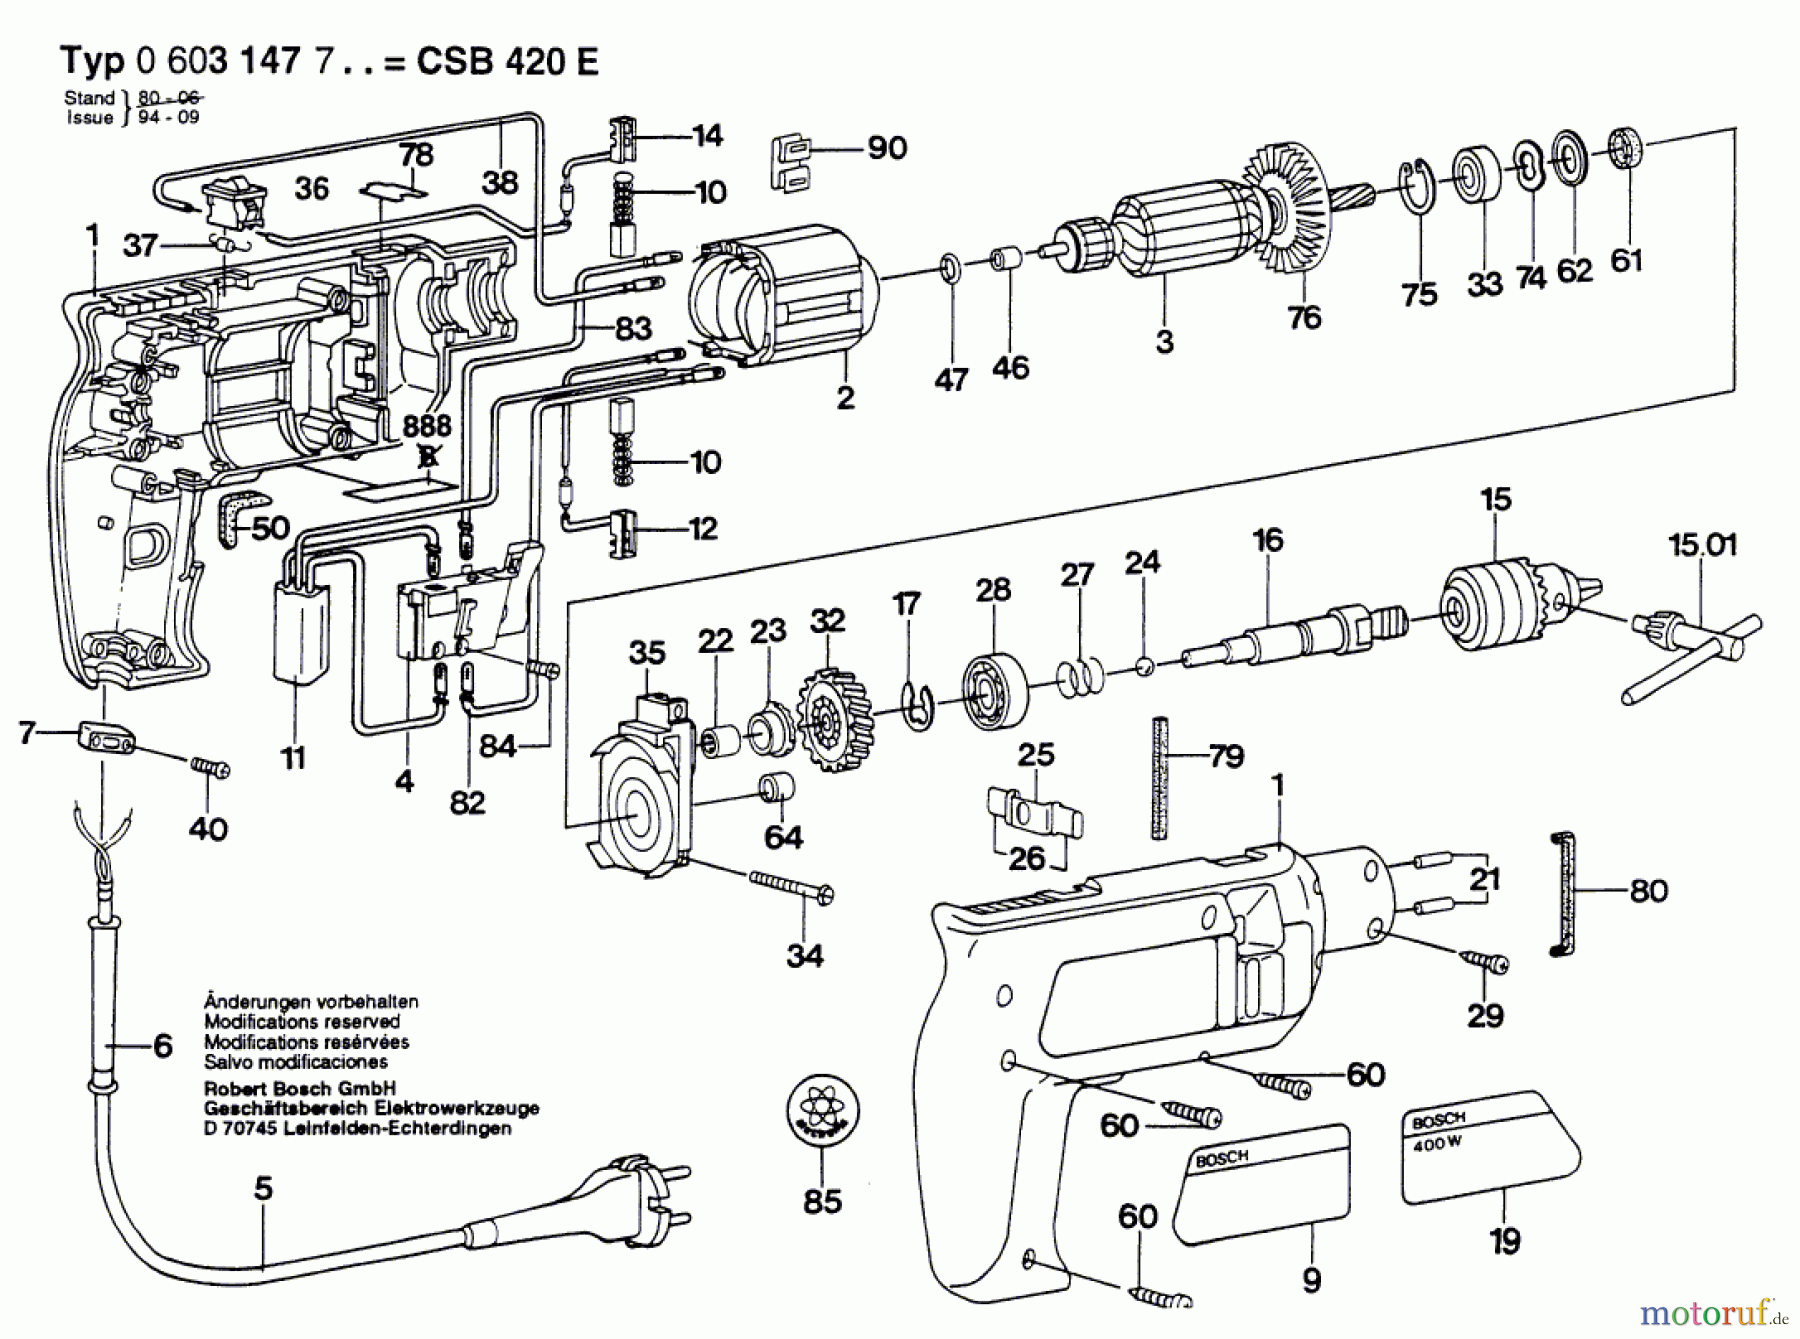  Bosch Werkzeug Schlagbohrmaschine CSB 420-E Seite 1